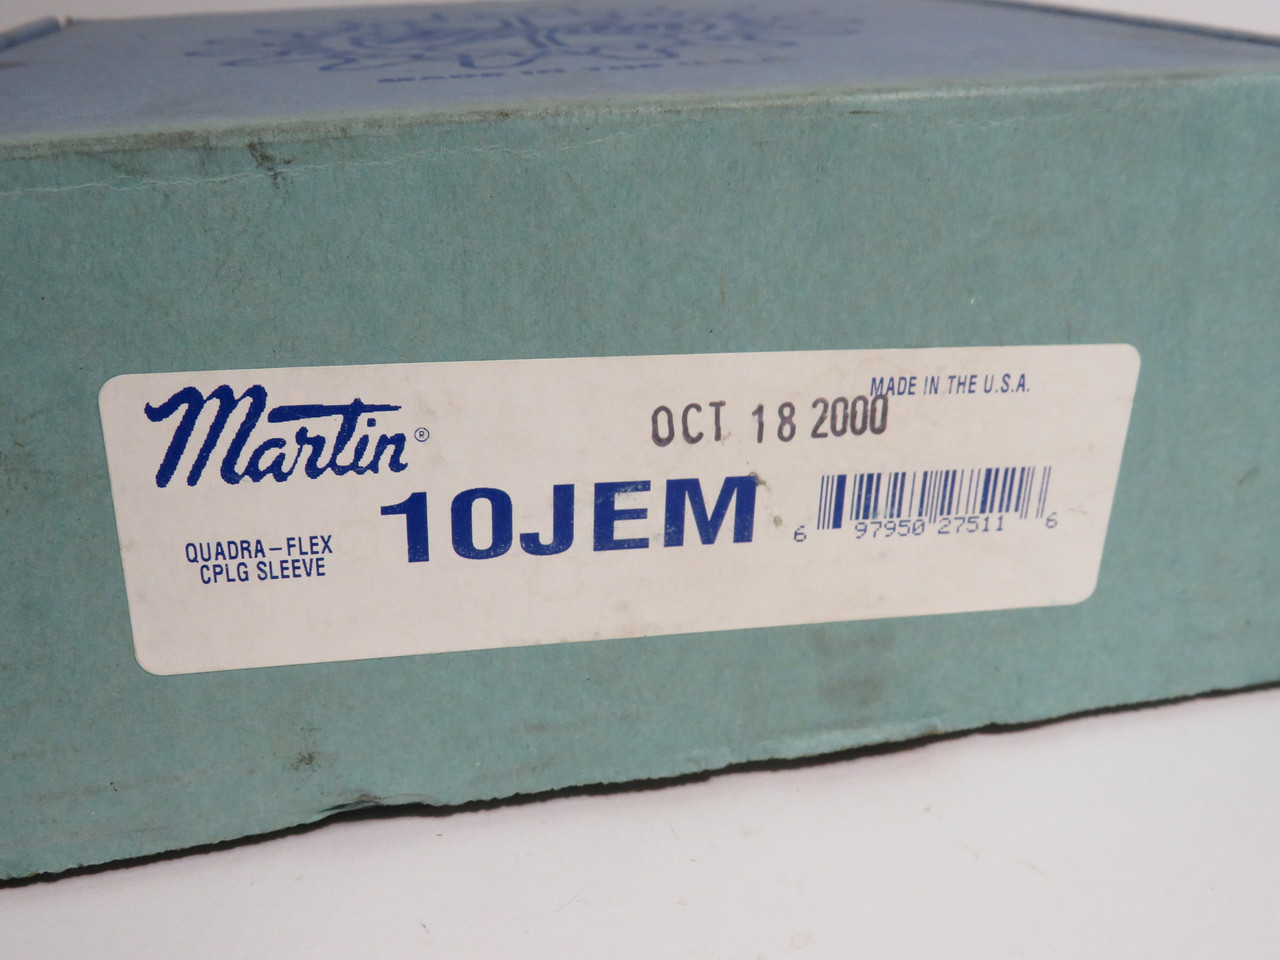 Martin 10JEM Quadra-Flex Coupling Sleeve Size 10 7-1/16" OD 4" 3-7/16" W NEW